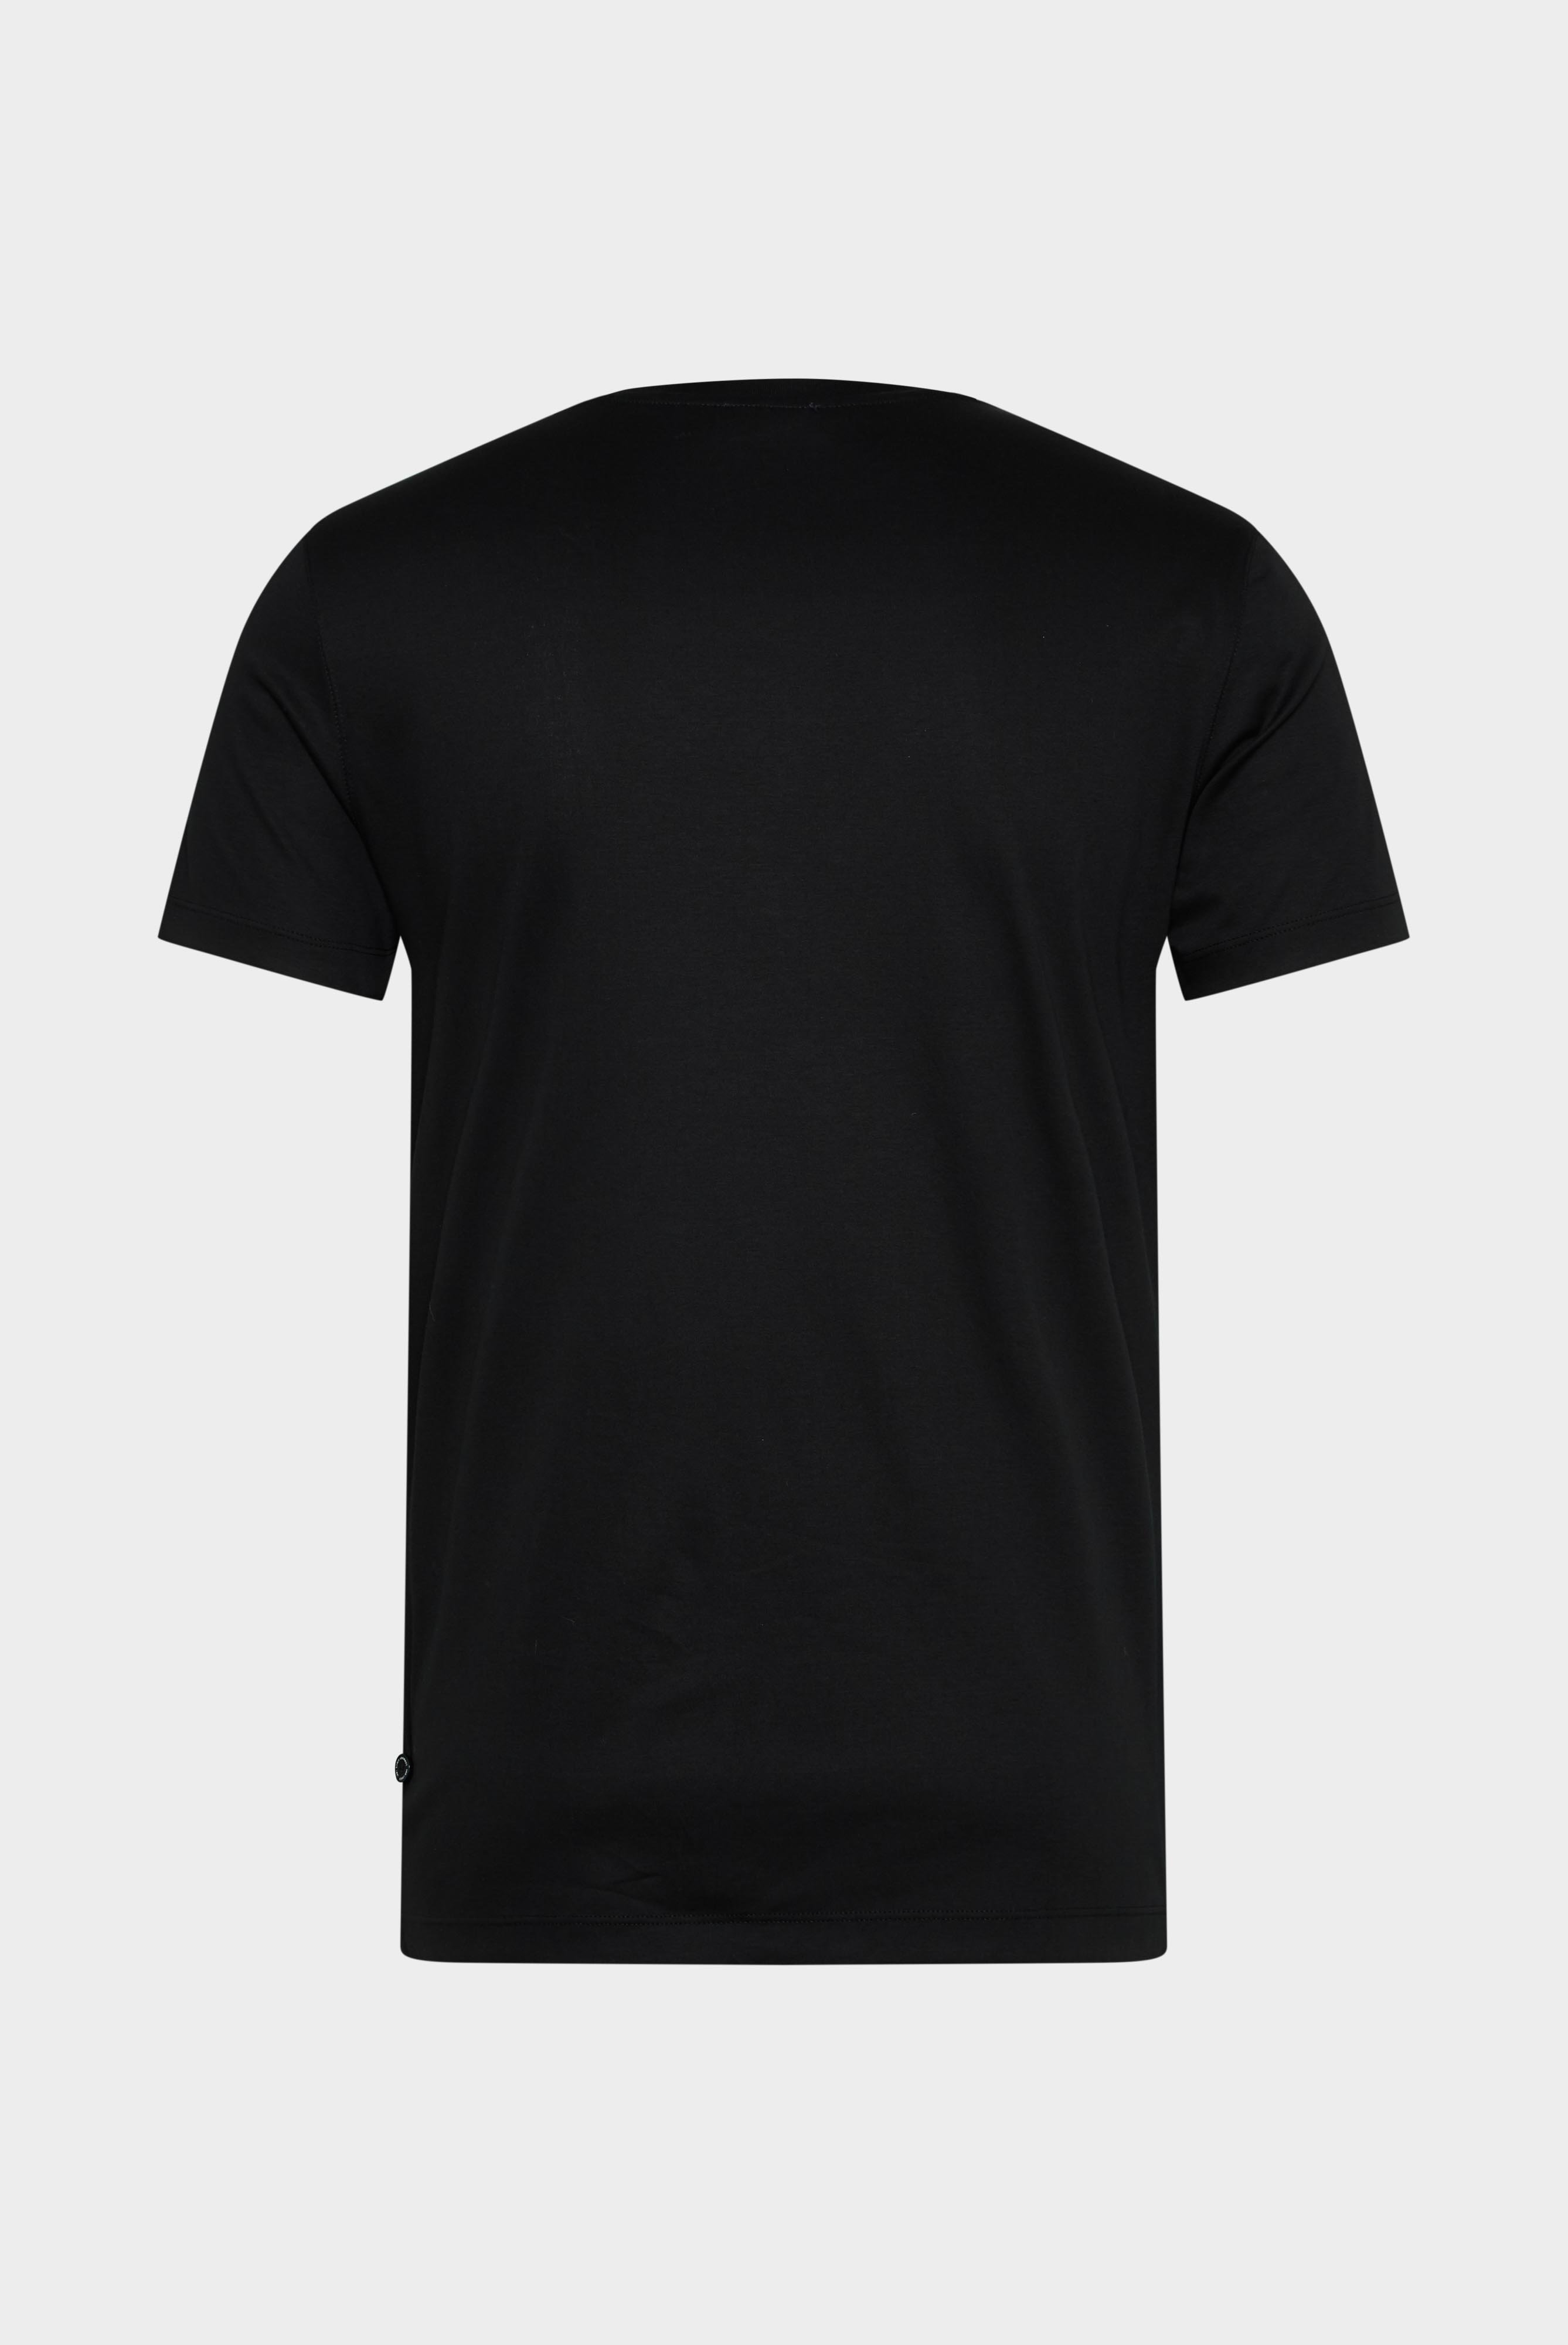 T-Shirts+V-Ausschnitt Jersey T-Shirt Slim Fit+20.1715.UX.180031.099.XXL